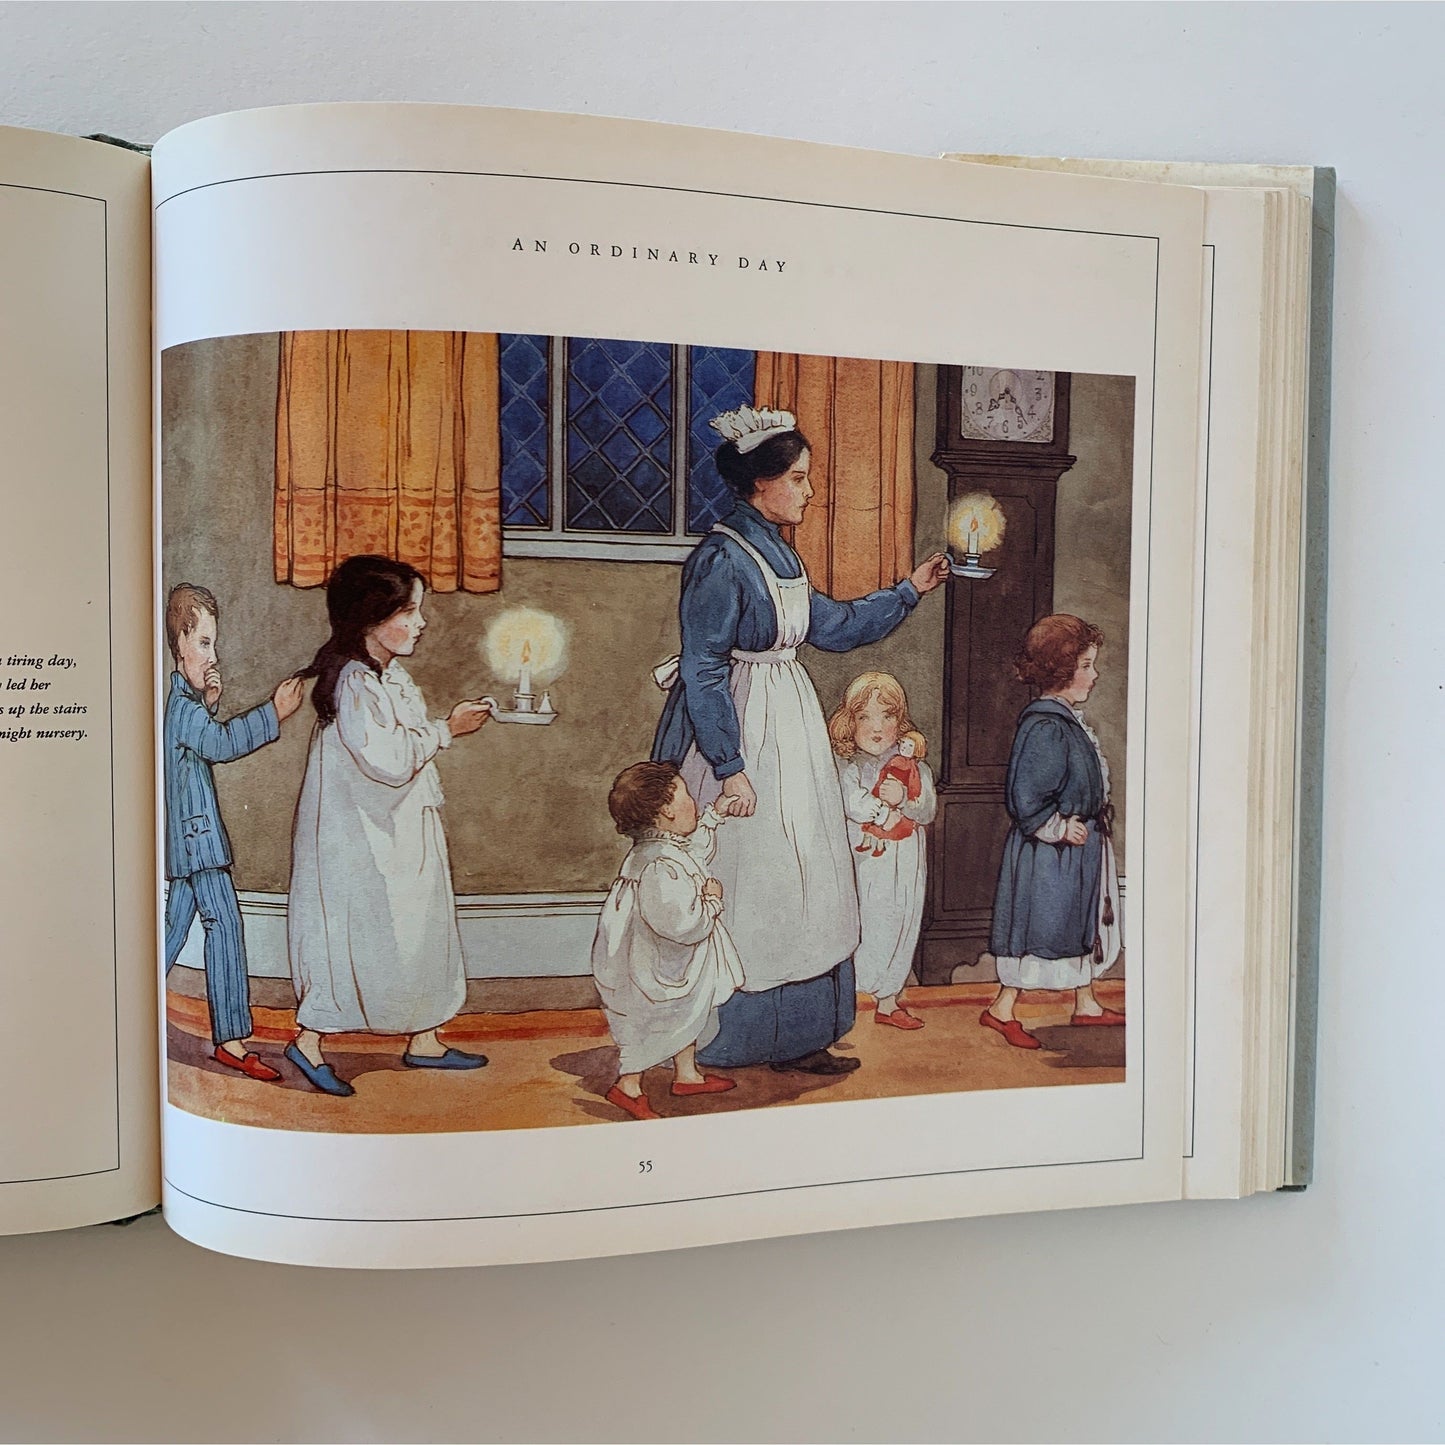 The Edwardian Childhood, 1991, Illustrated Hardcover